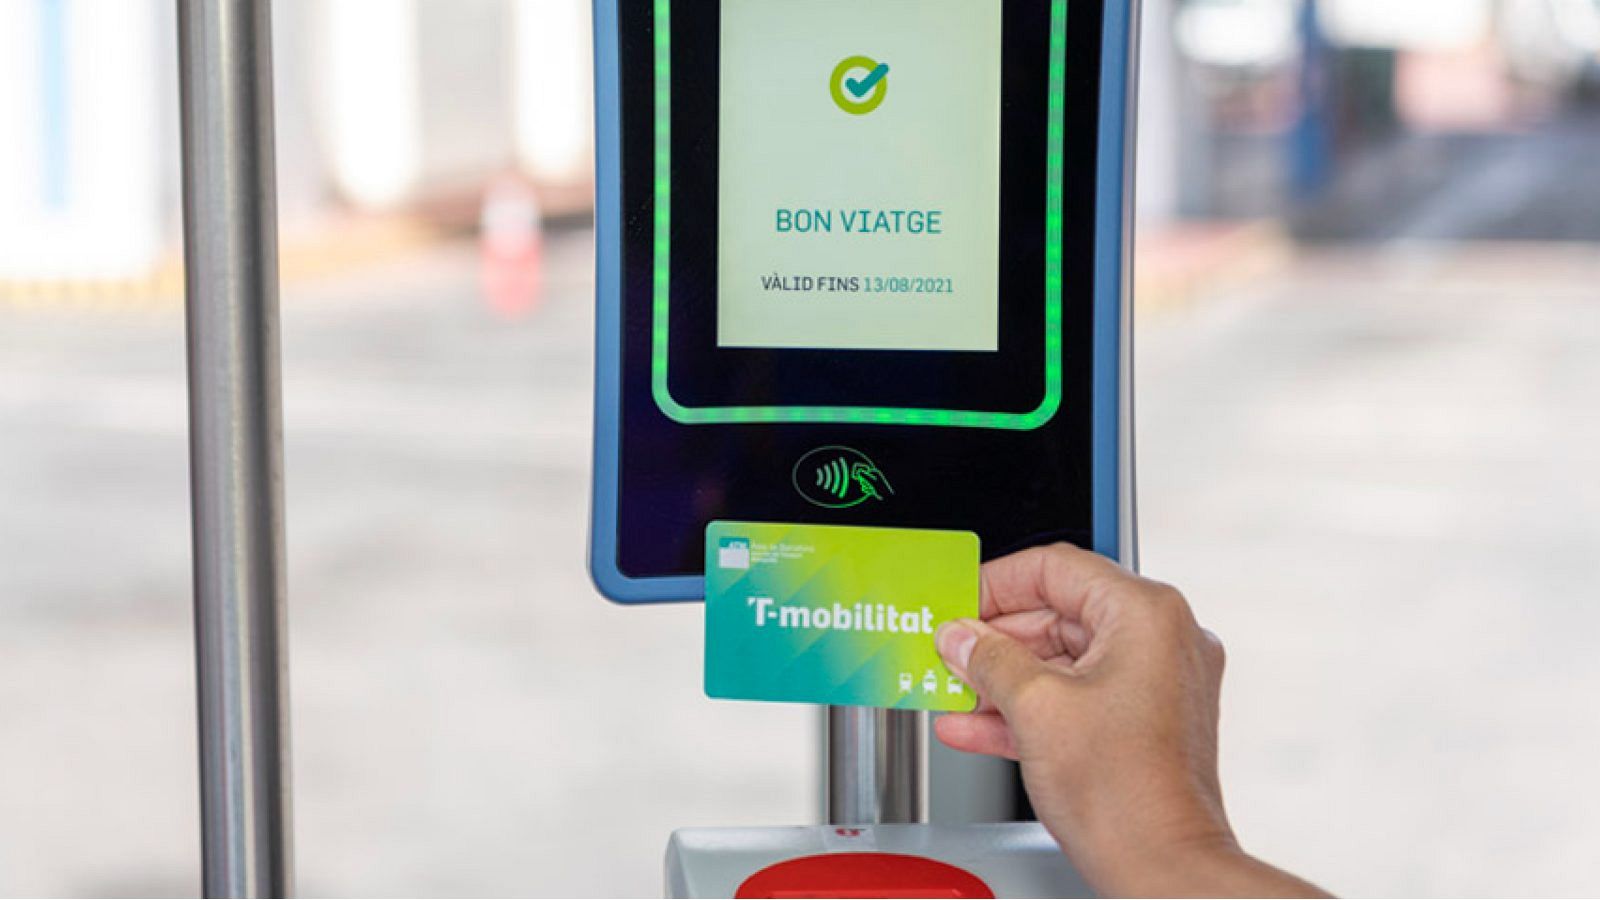 La targeta T-Mobilitat permet adquirir qualsevol títol de transport del metro de Barcelona